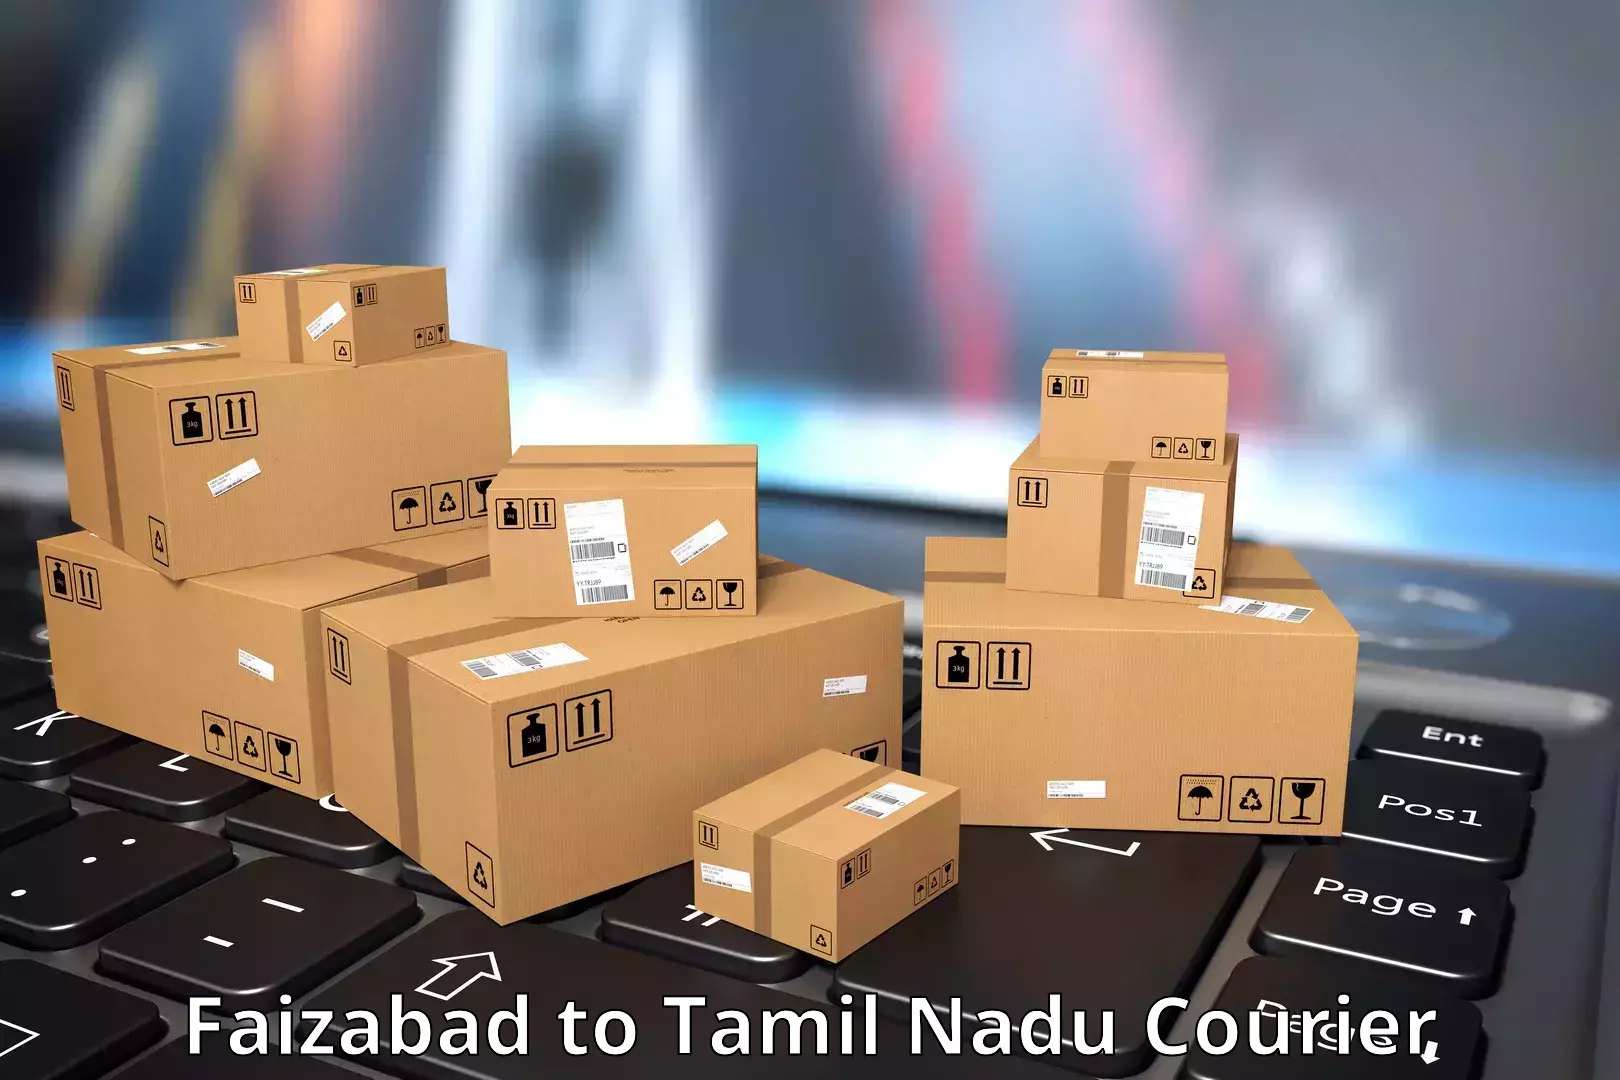 Automated shipping processes Faizabad to Arakkonam